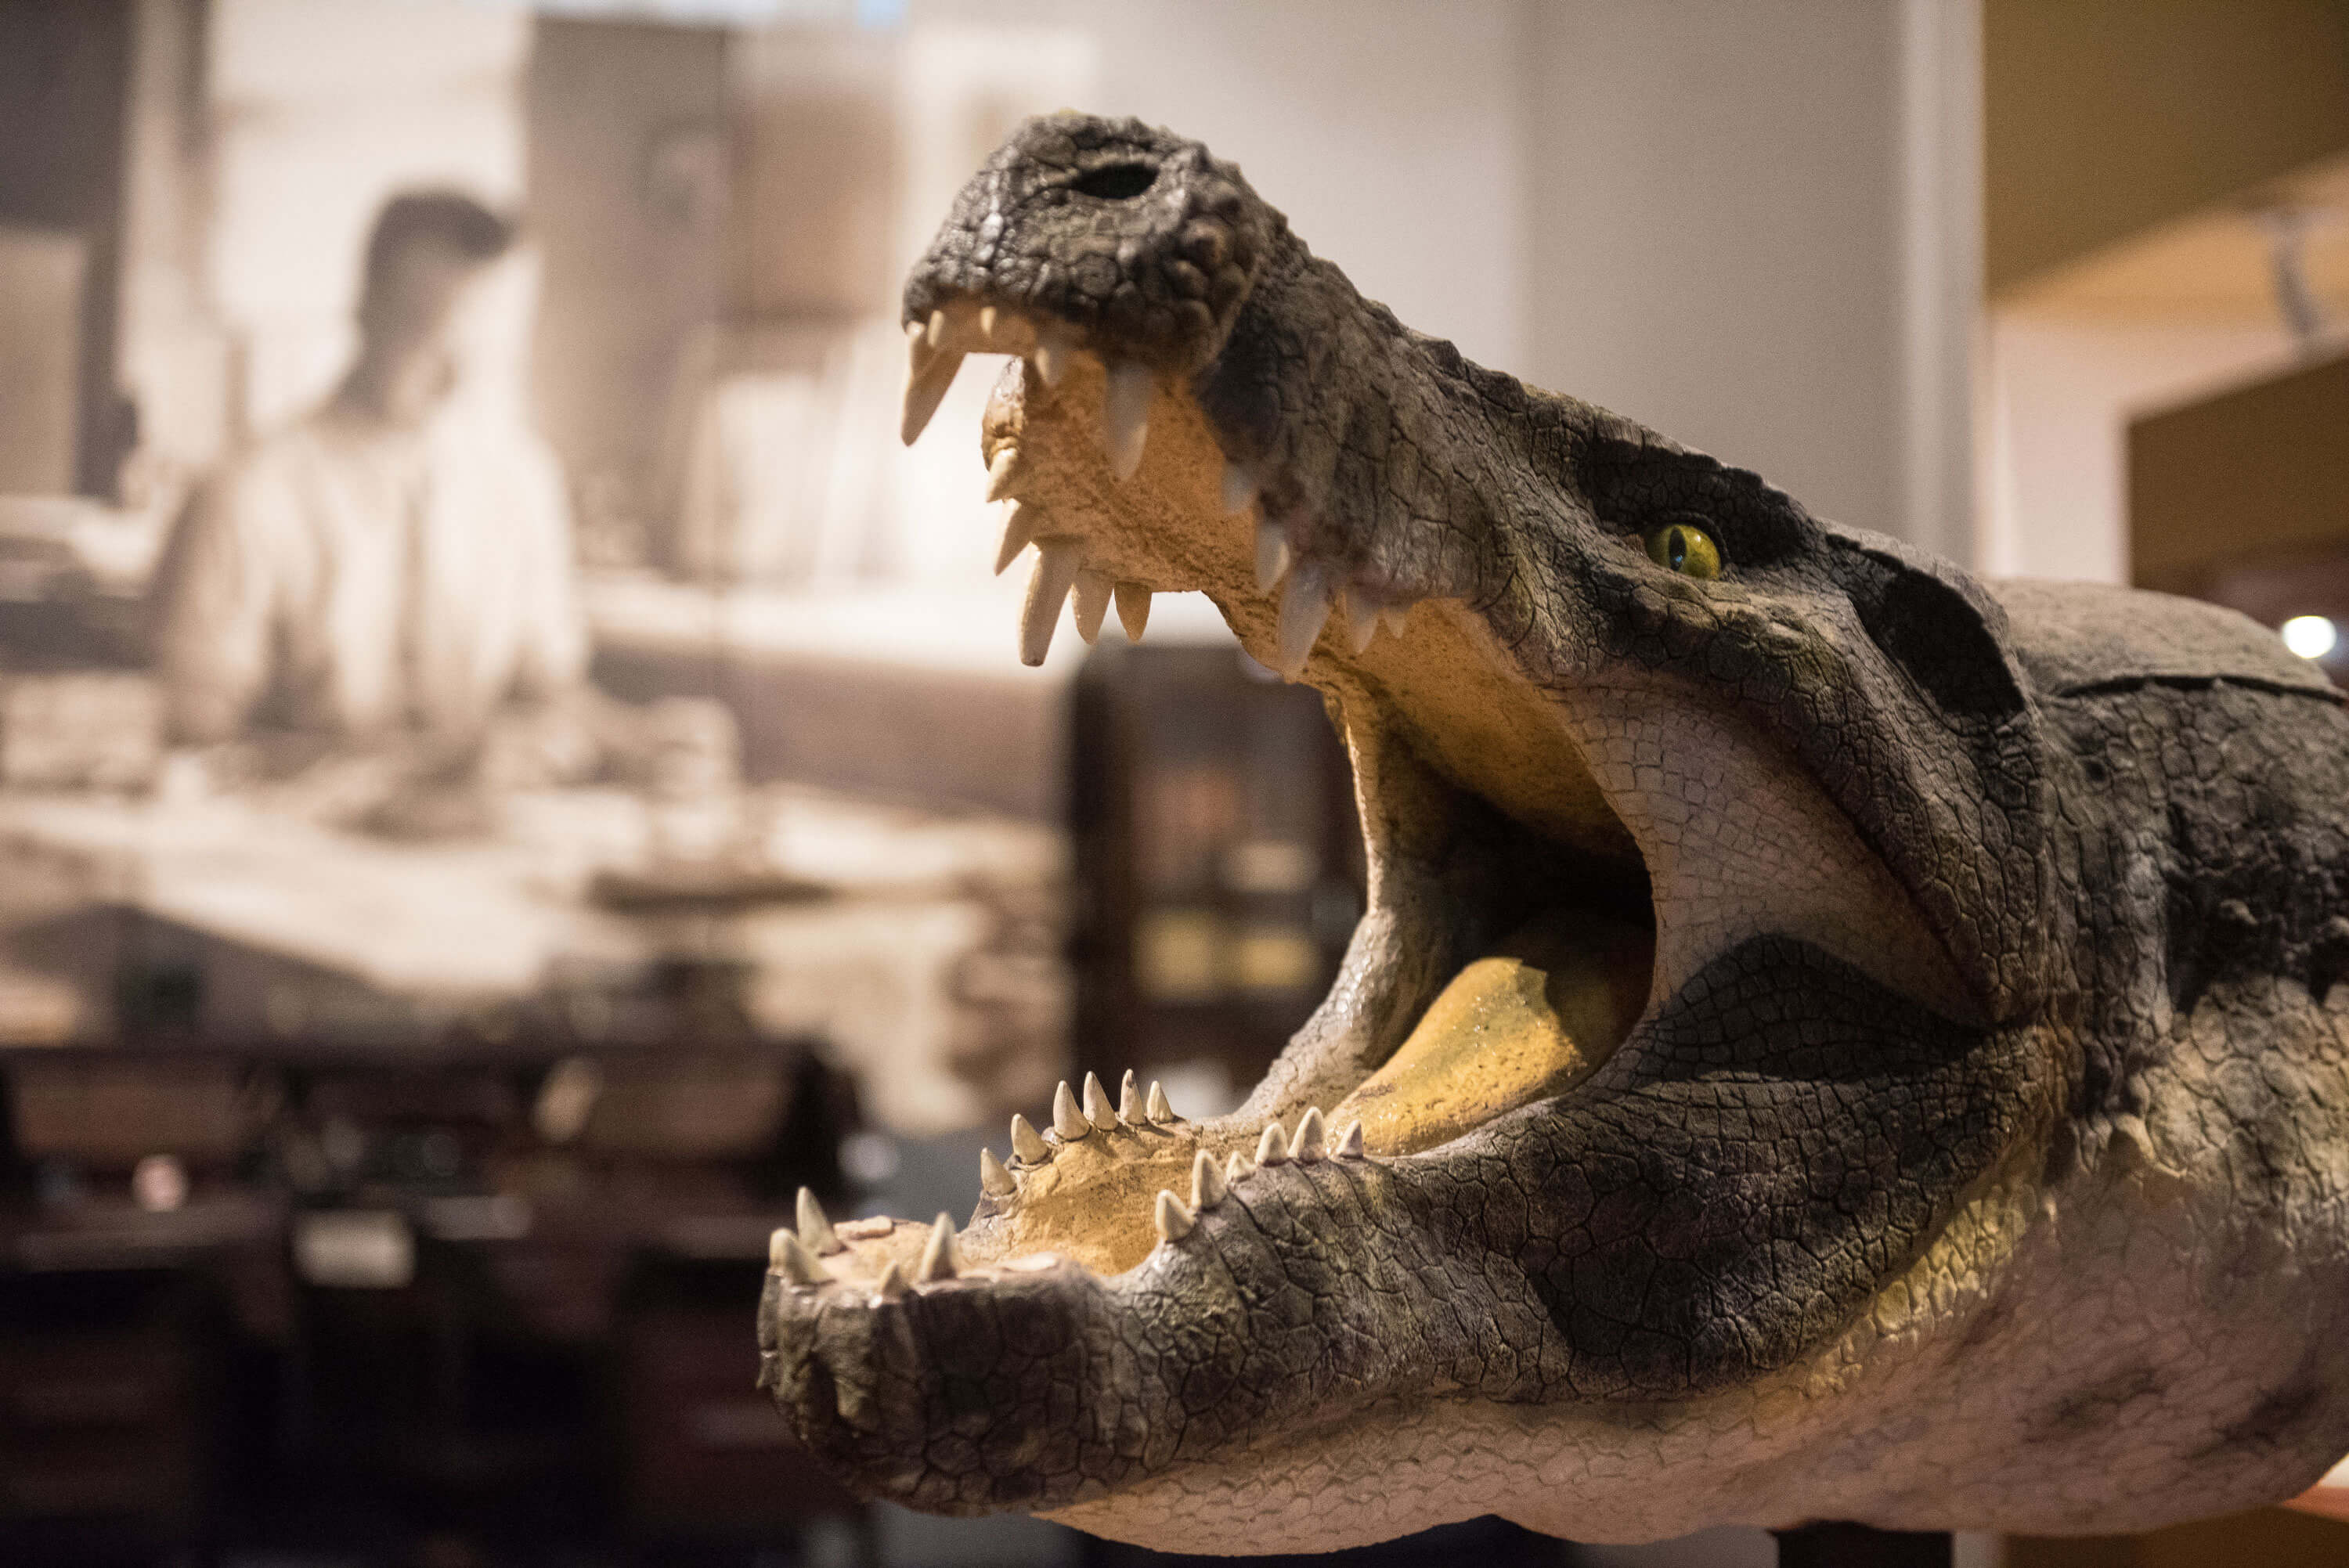 ReconstituiÃ§Ã£o da cabeÃ§a do Crocodiliano Stratiotosuchus, encontrado no CretÃ¡ceo (80 milhÃµes de anos) nos estado de SÃ£o Paulo